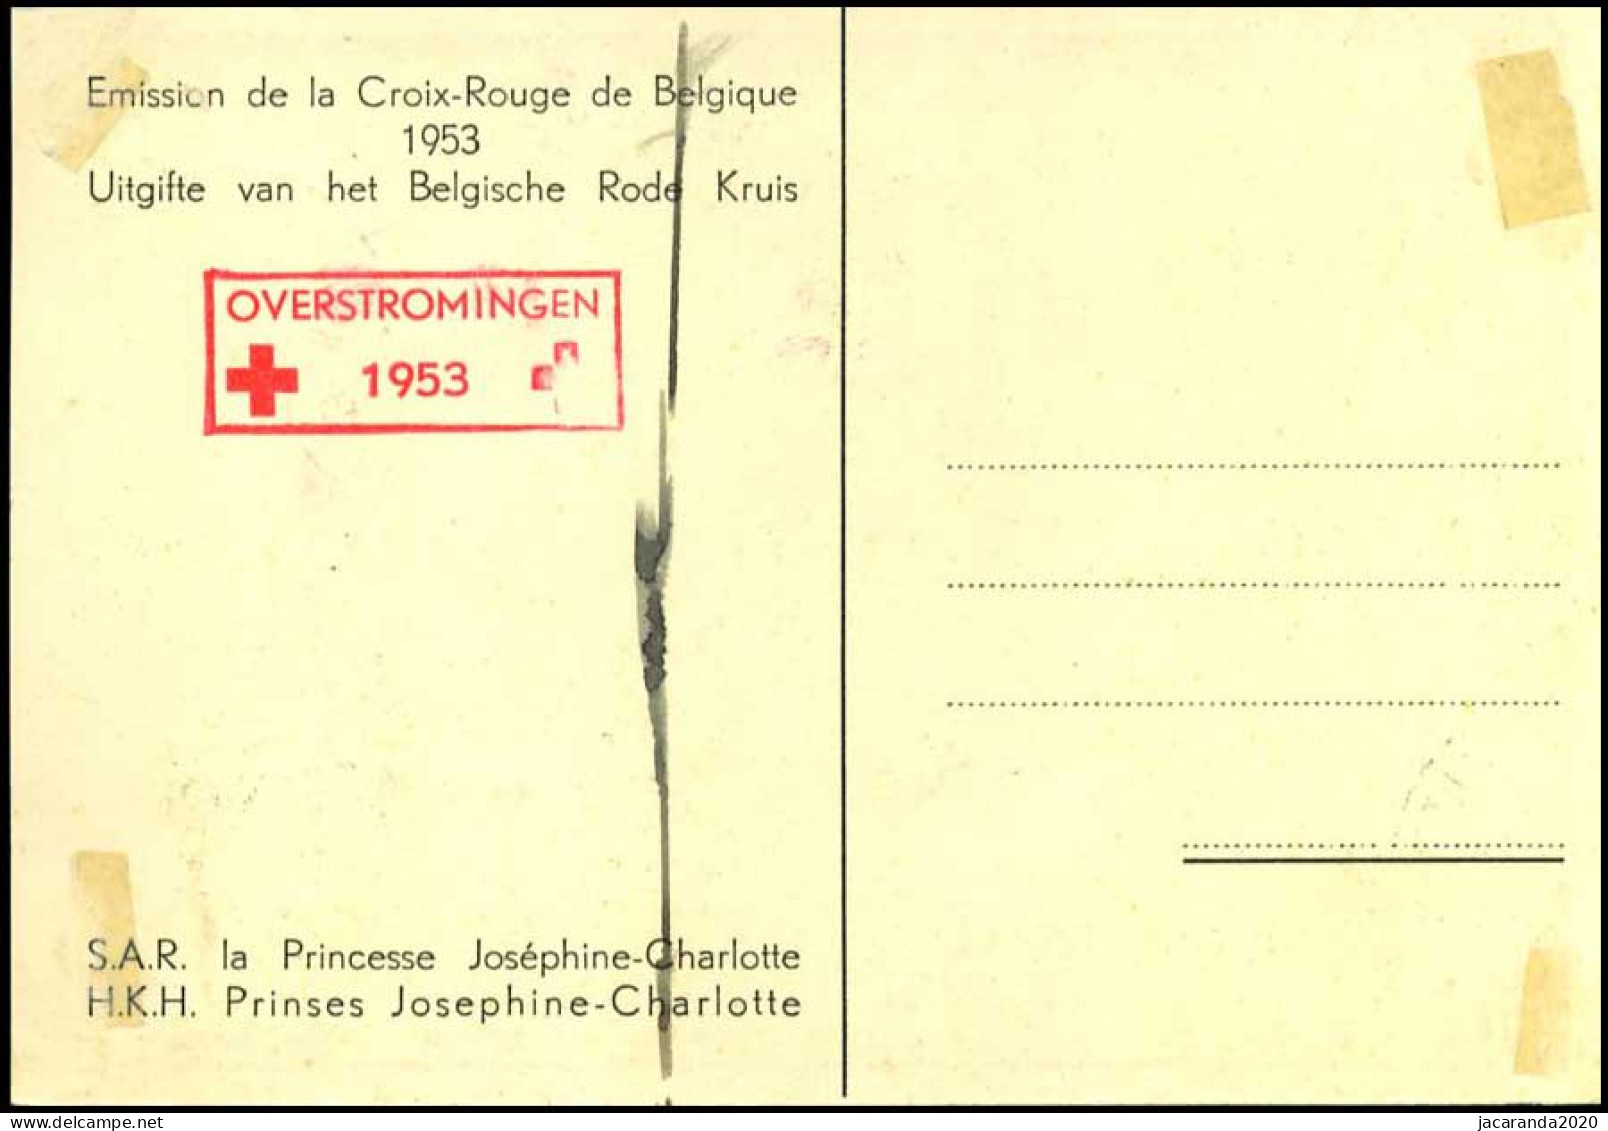 912+913 - MK - Huwelijk Prinses Joséphine-Charlotte - 1951-1960